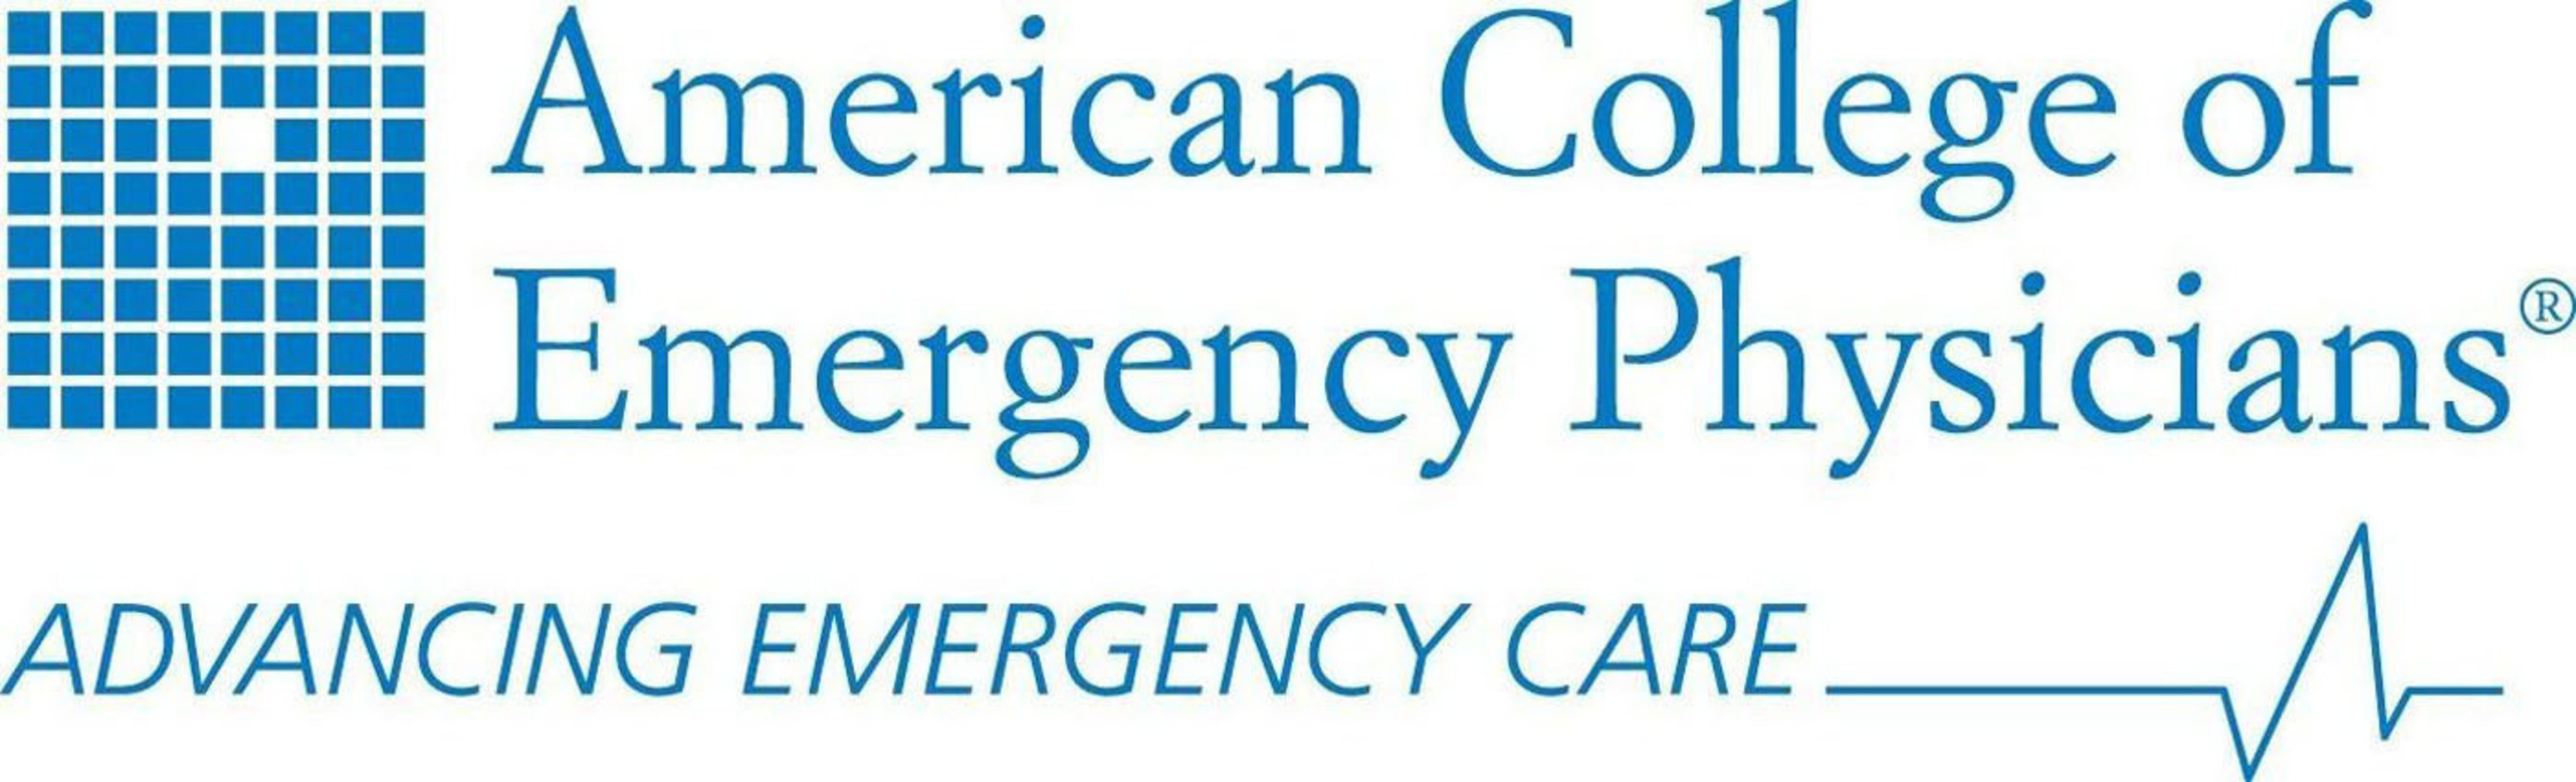 ACEP Logo. (PRNewsFoto/American College of Emergency Physicians) (PRNewsFoto/ACEP)